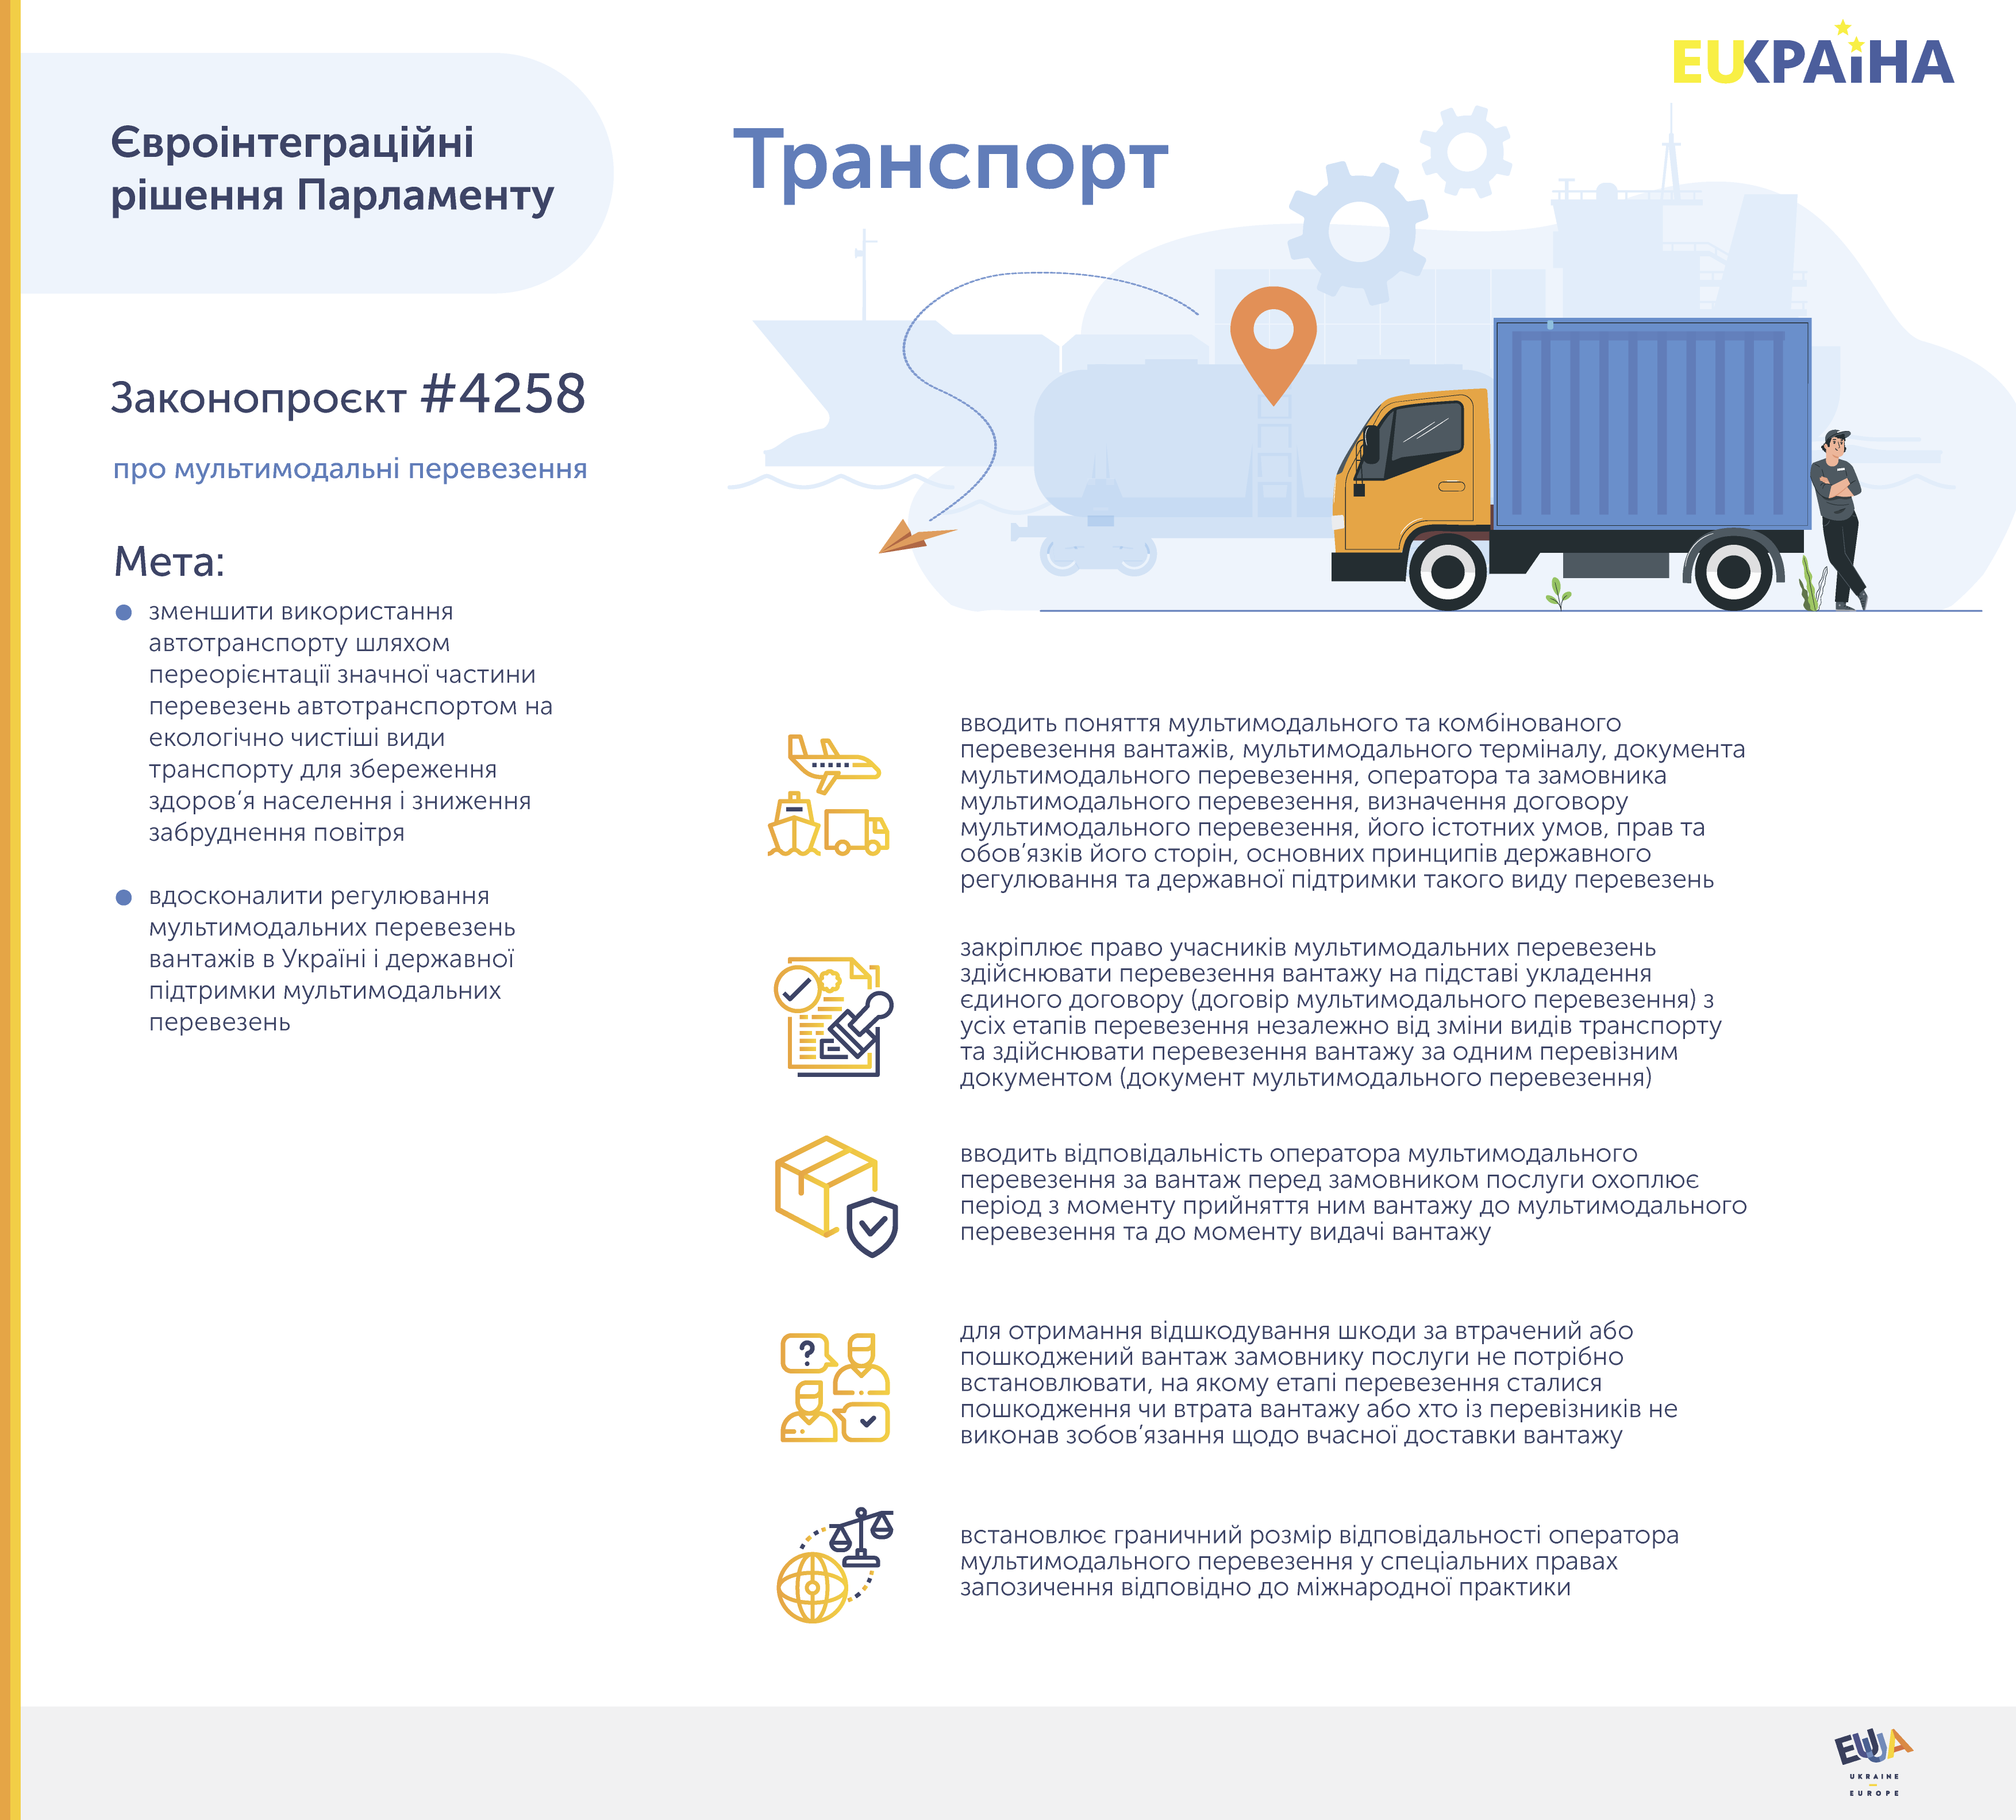 Верховна Рада ухвалила закон про мультимодальні перевезення вантажів